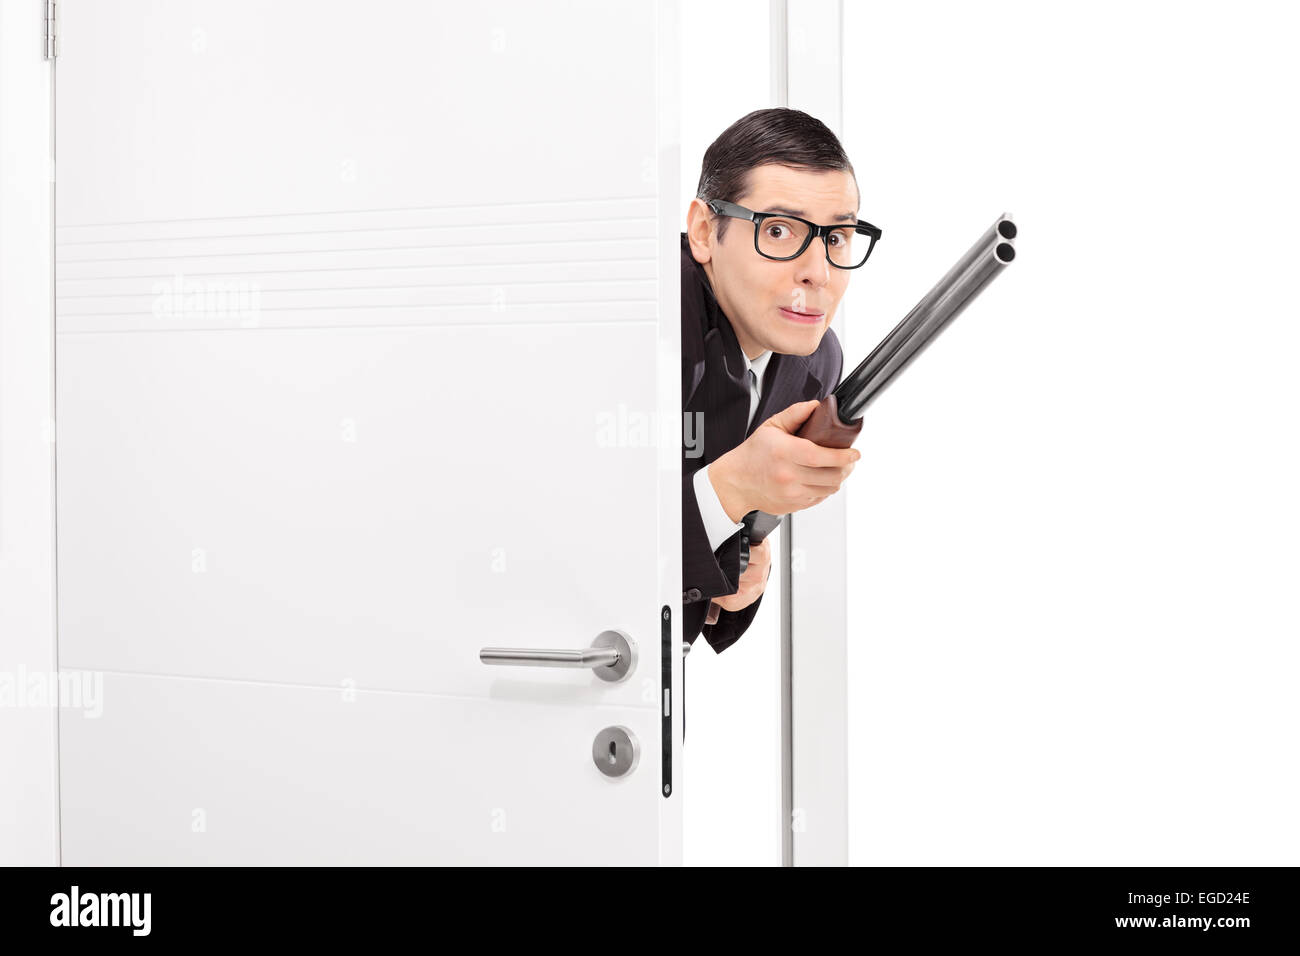 L'homme terrifié au fusil entrer dans une pièce isolé sur fond blanc Banque D'Images